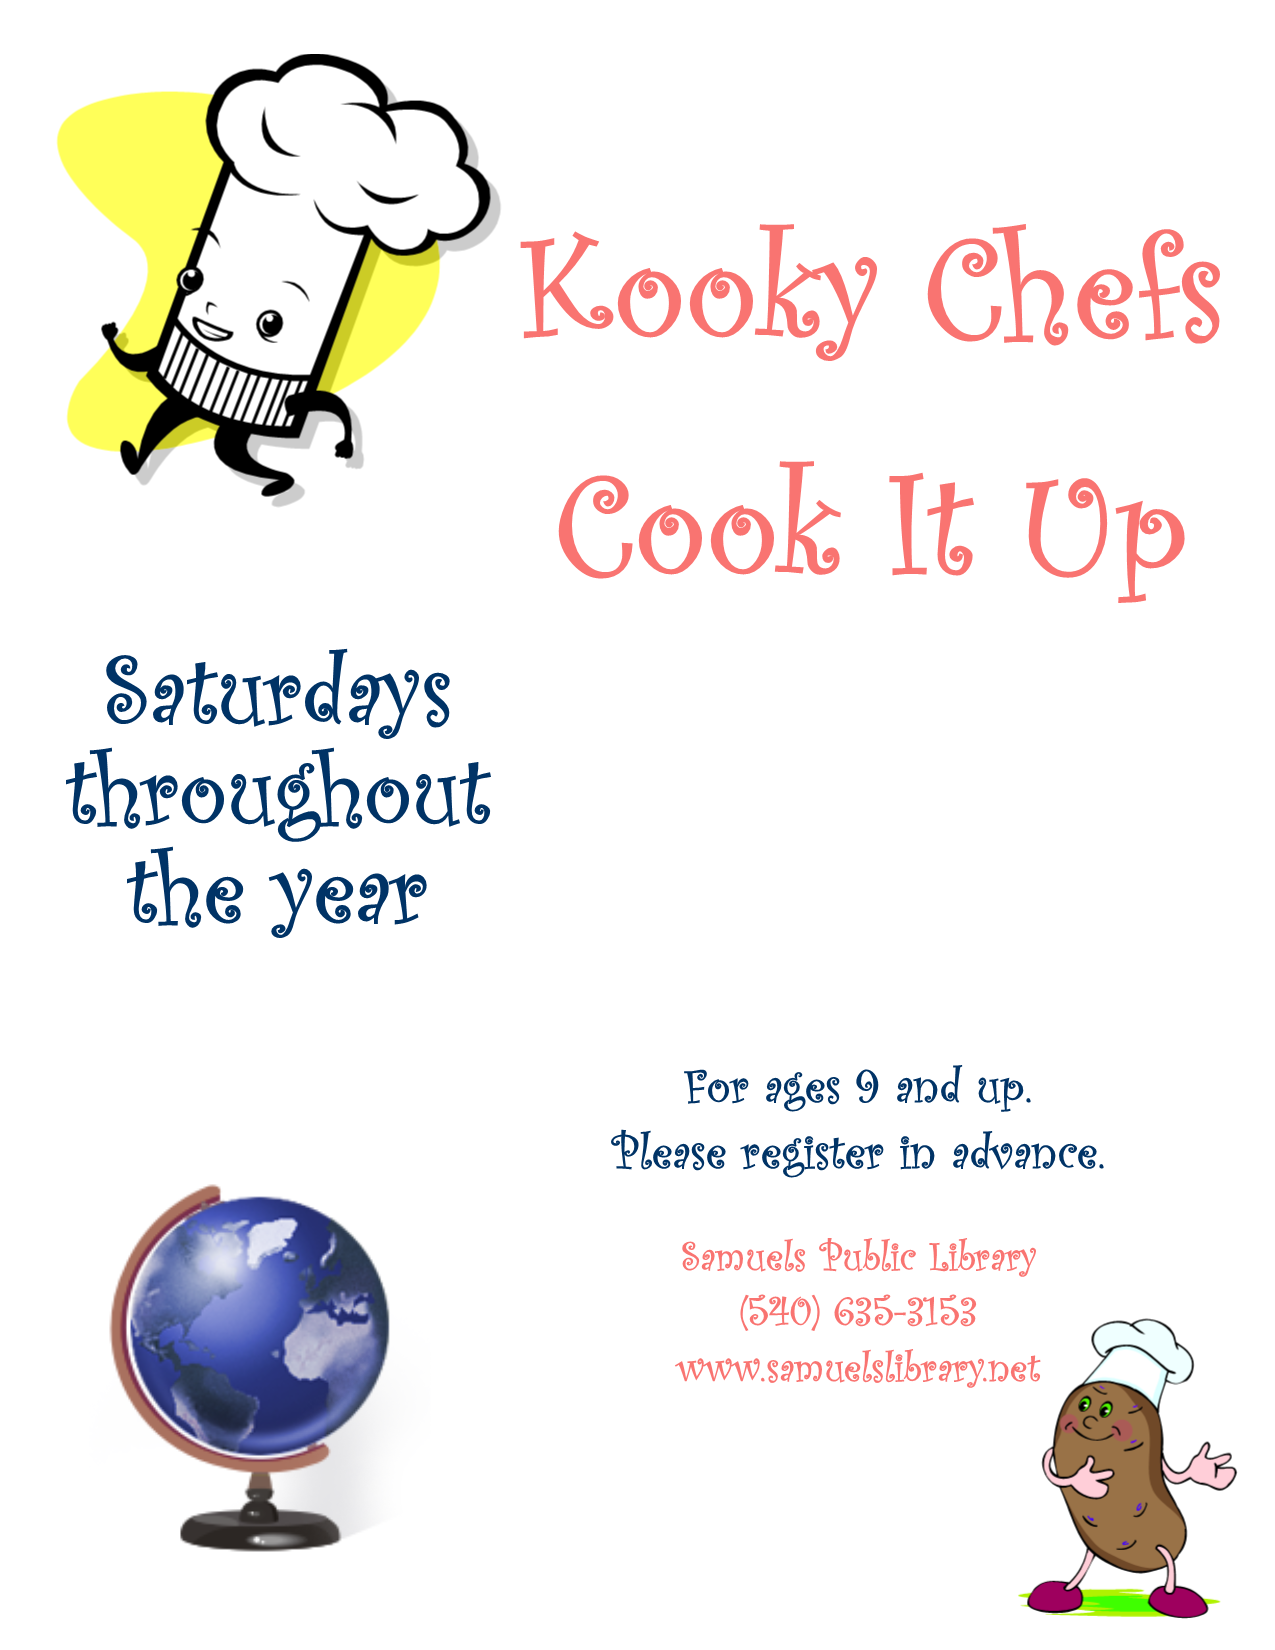 Kooky Chefs Cook It Up